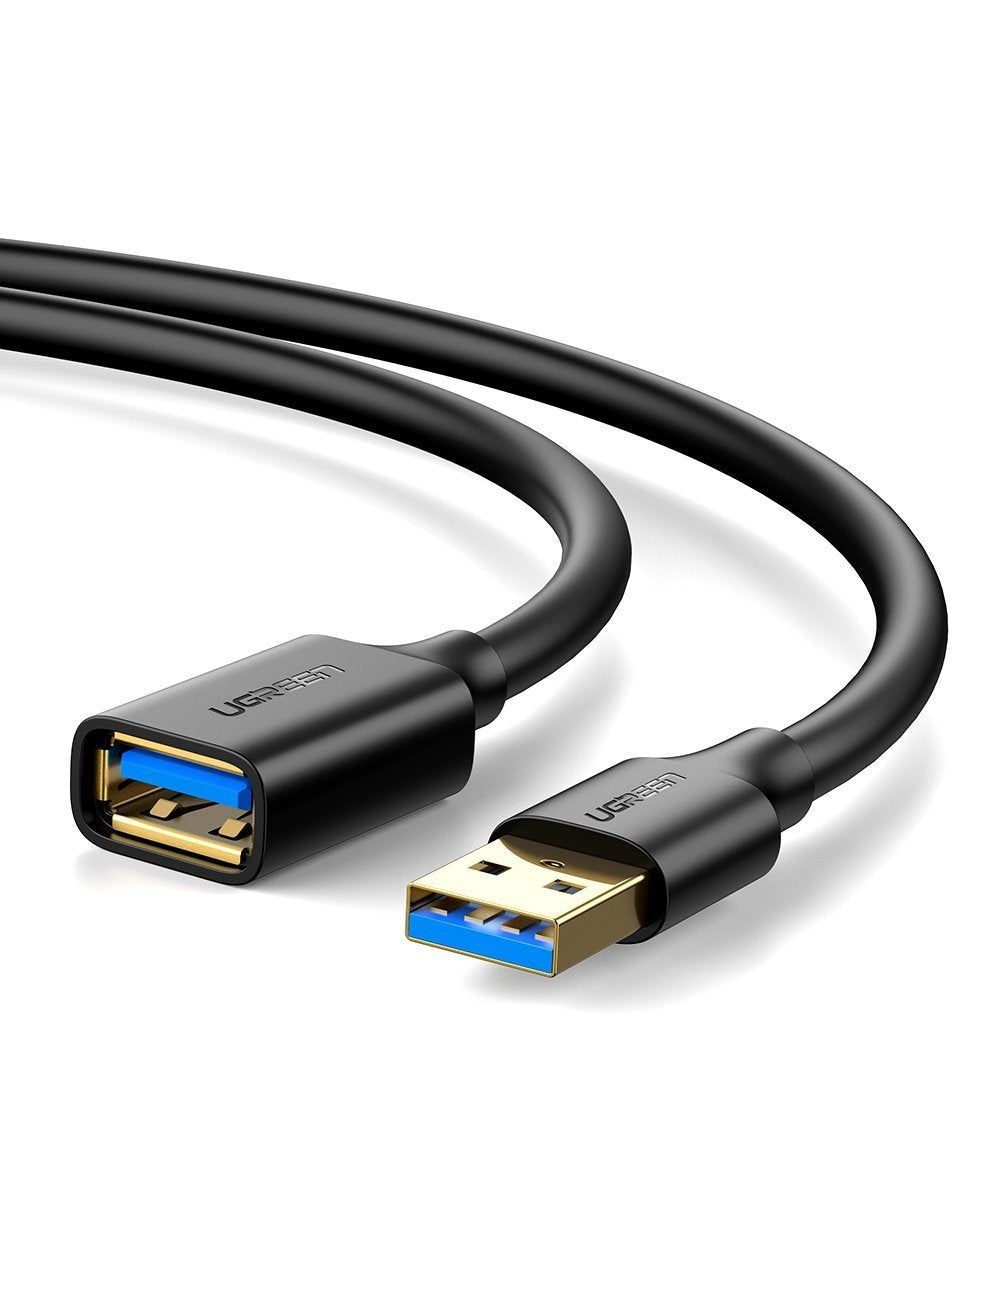 10373 Кабель UGREEN US129 USB-A - USB-A (папа-мама), цвет: черный, 2M